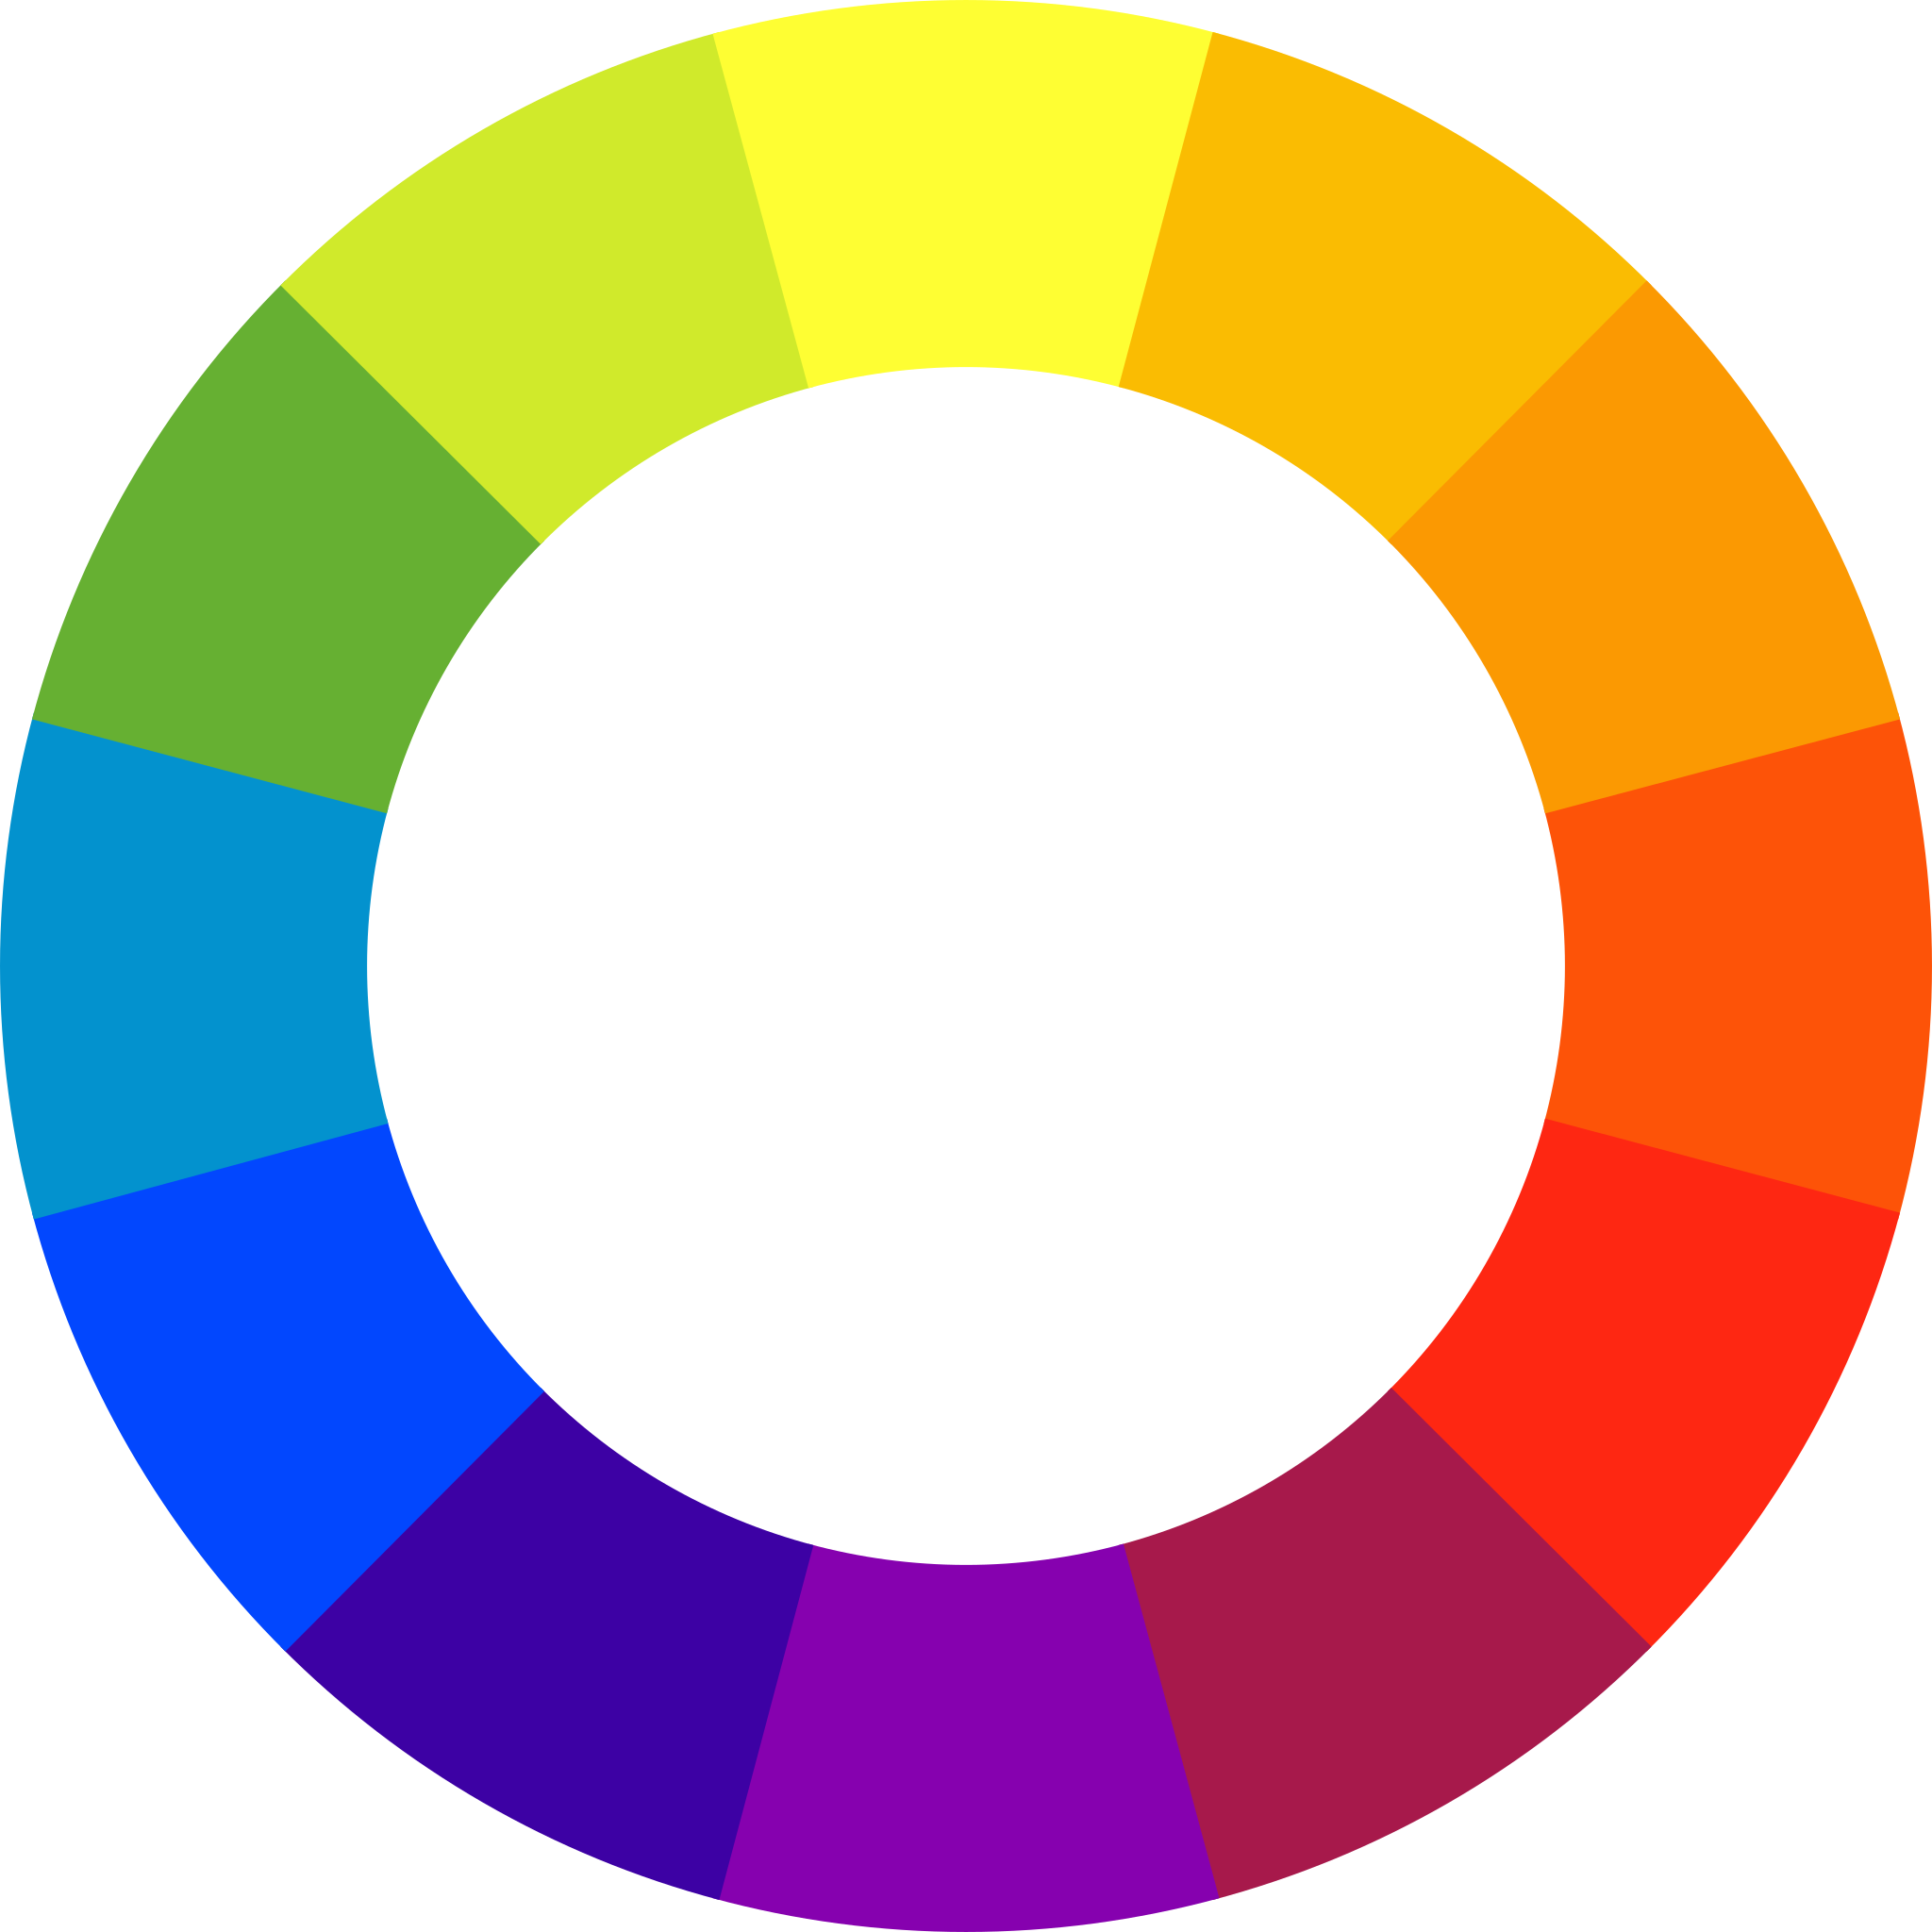 Цветовой круг Иттена Триада. Иоханнес Иттен цветовой круг. Иоганнес Иттен цветовой круг. Цветовой круг Иоханнеса Иттена. Коло 6